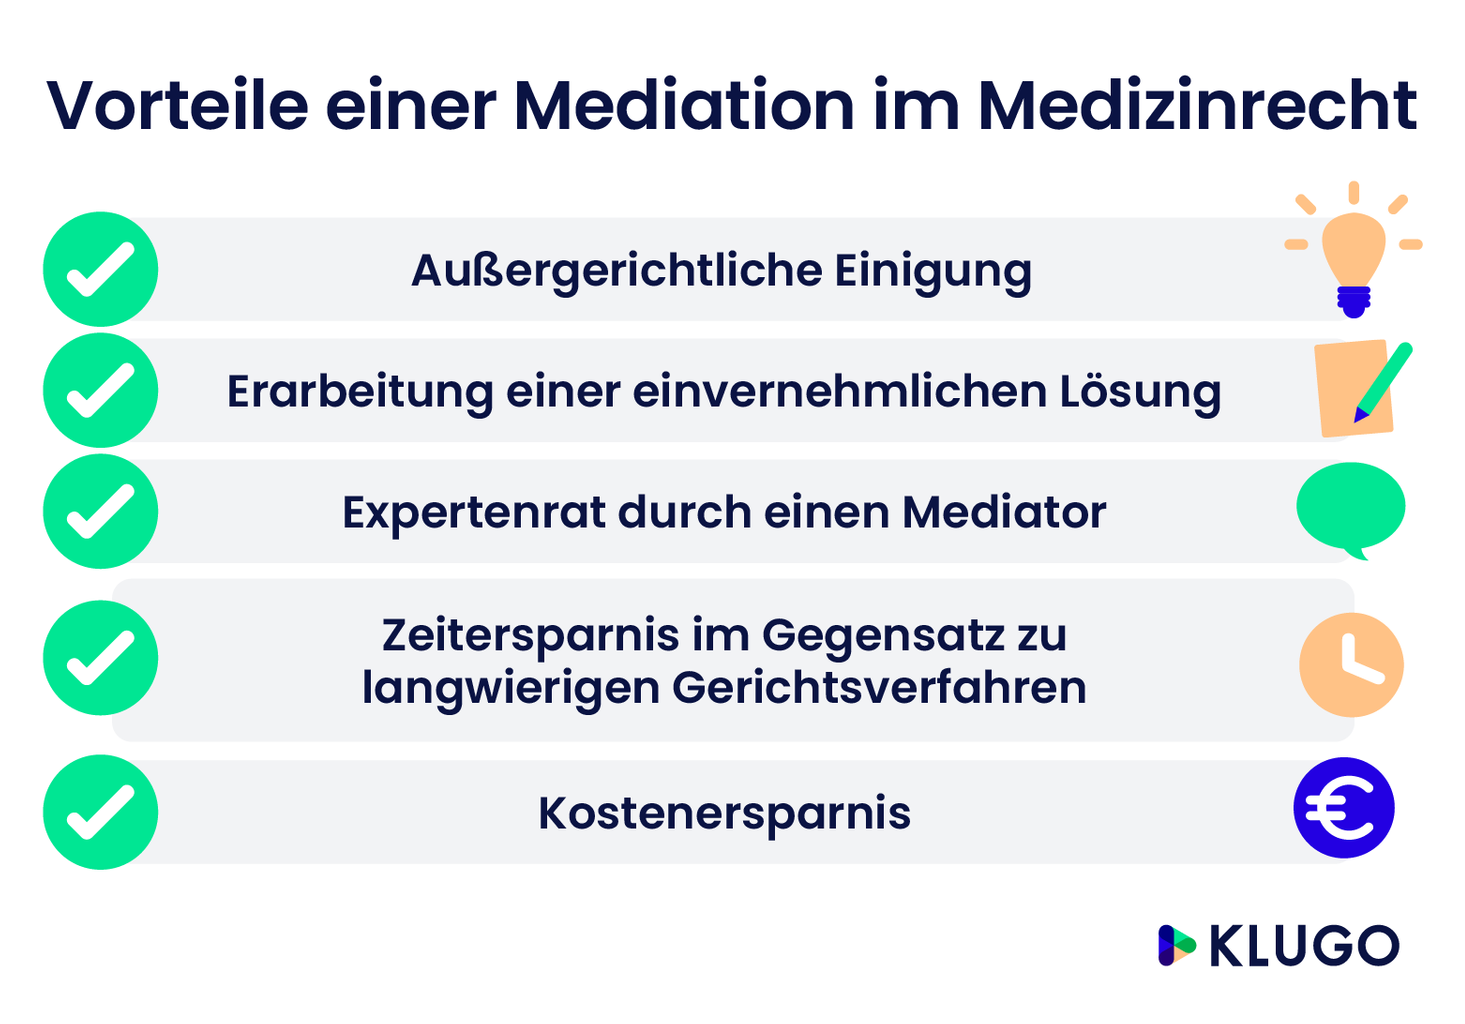 Vorteile einer Mediation im Medizinrecht – Infografik